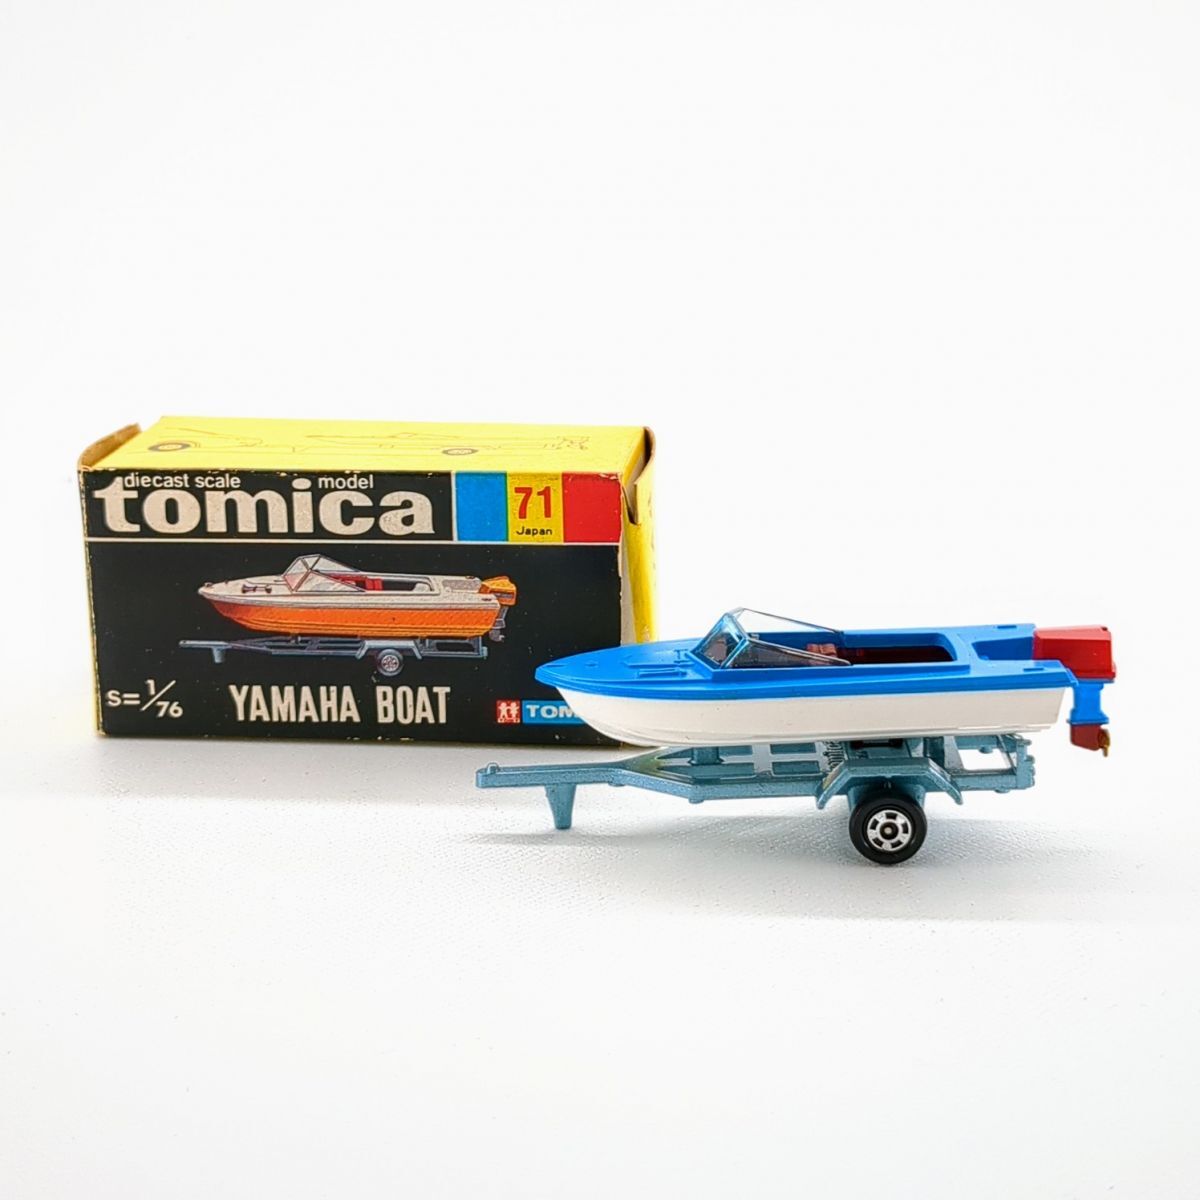  Tomica TOMY Yamaha лодка чёрный коробка [ Tomica No,71] немного царапина . загрязнения есть *3118/ Shizuoka Shimizu магазин 